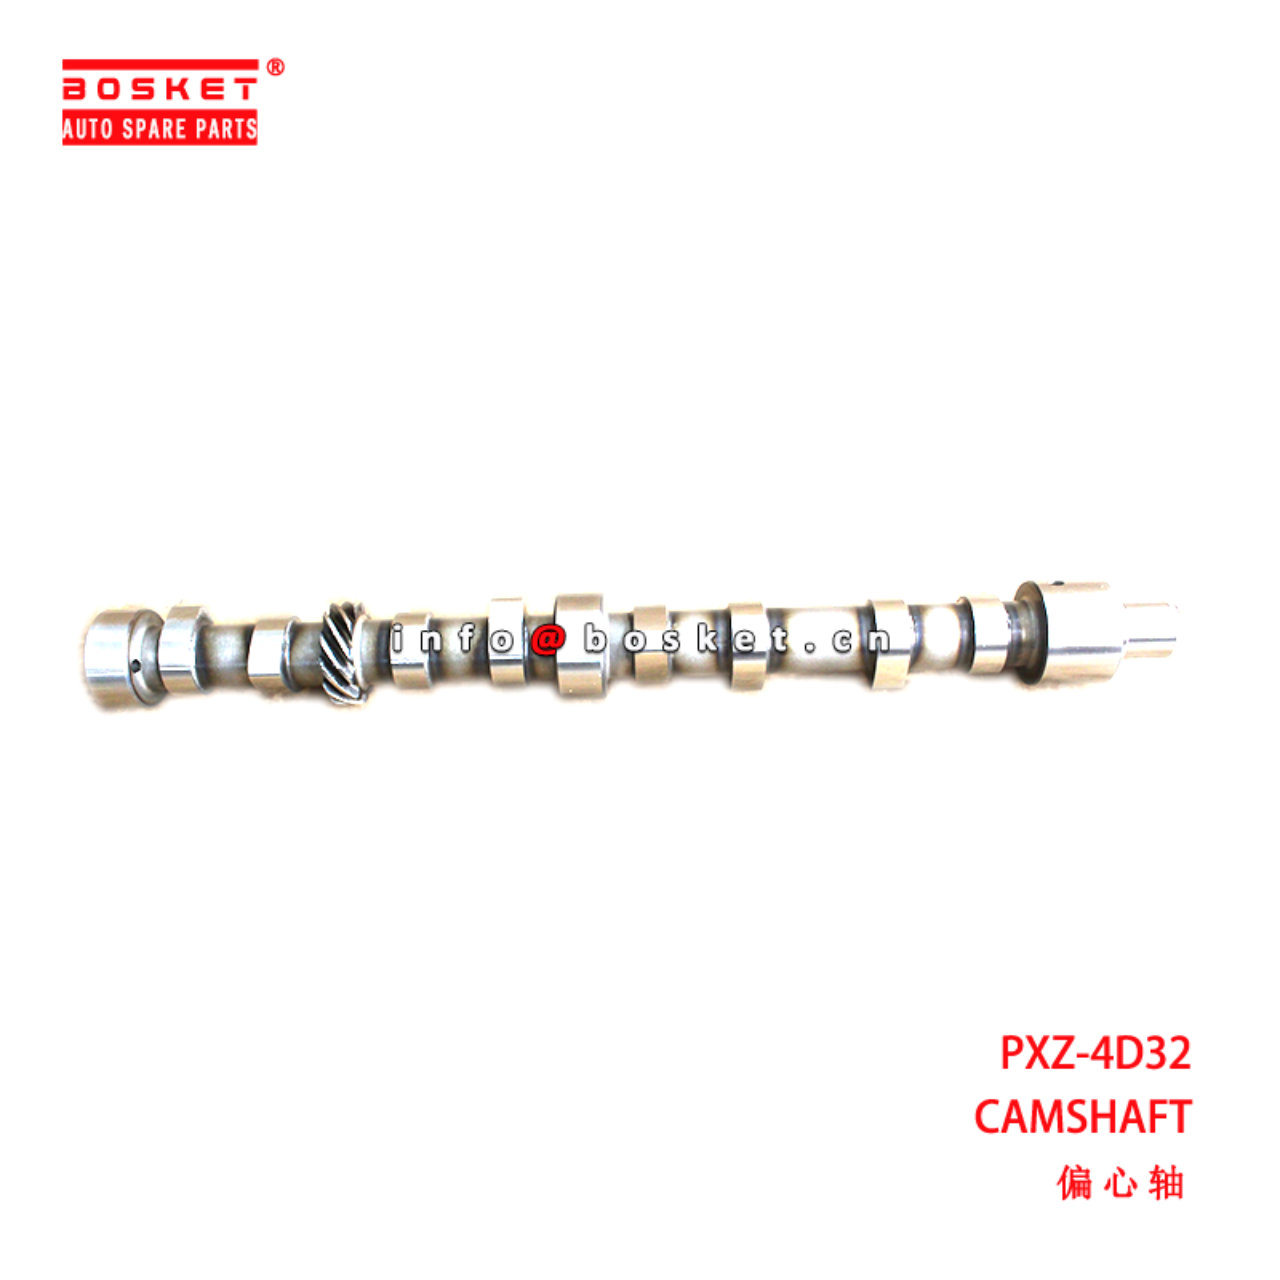 PXZ-4D32 Camshaft suitable for ISUZU  4D32 PXZ-4D32